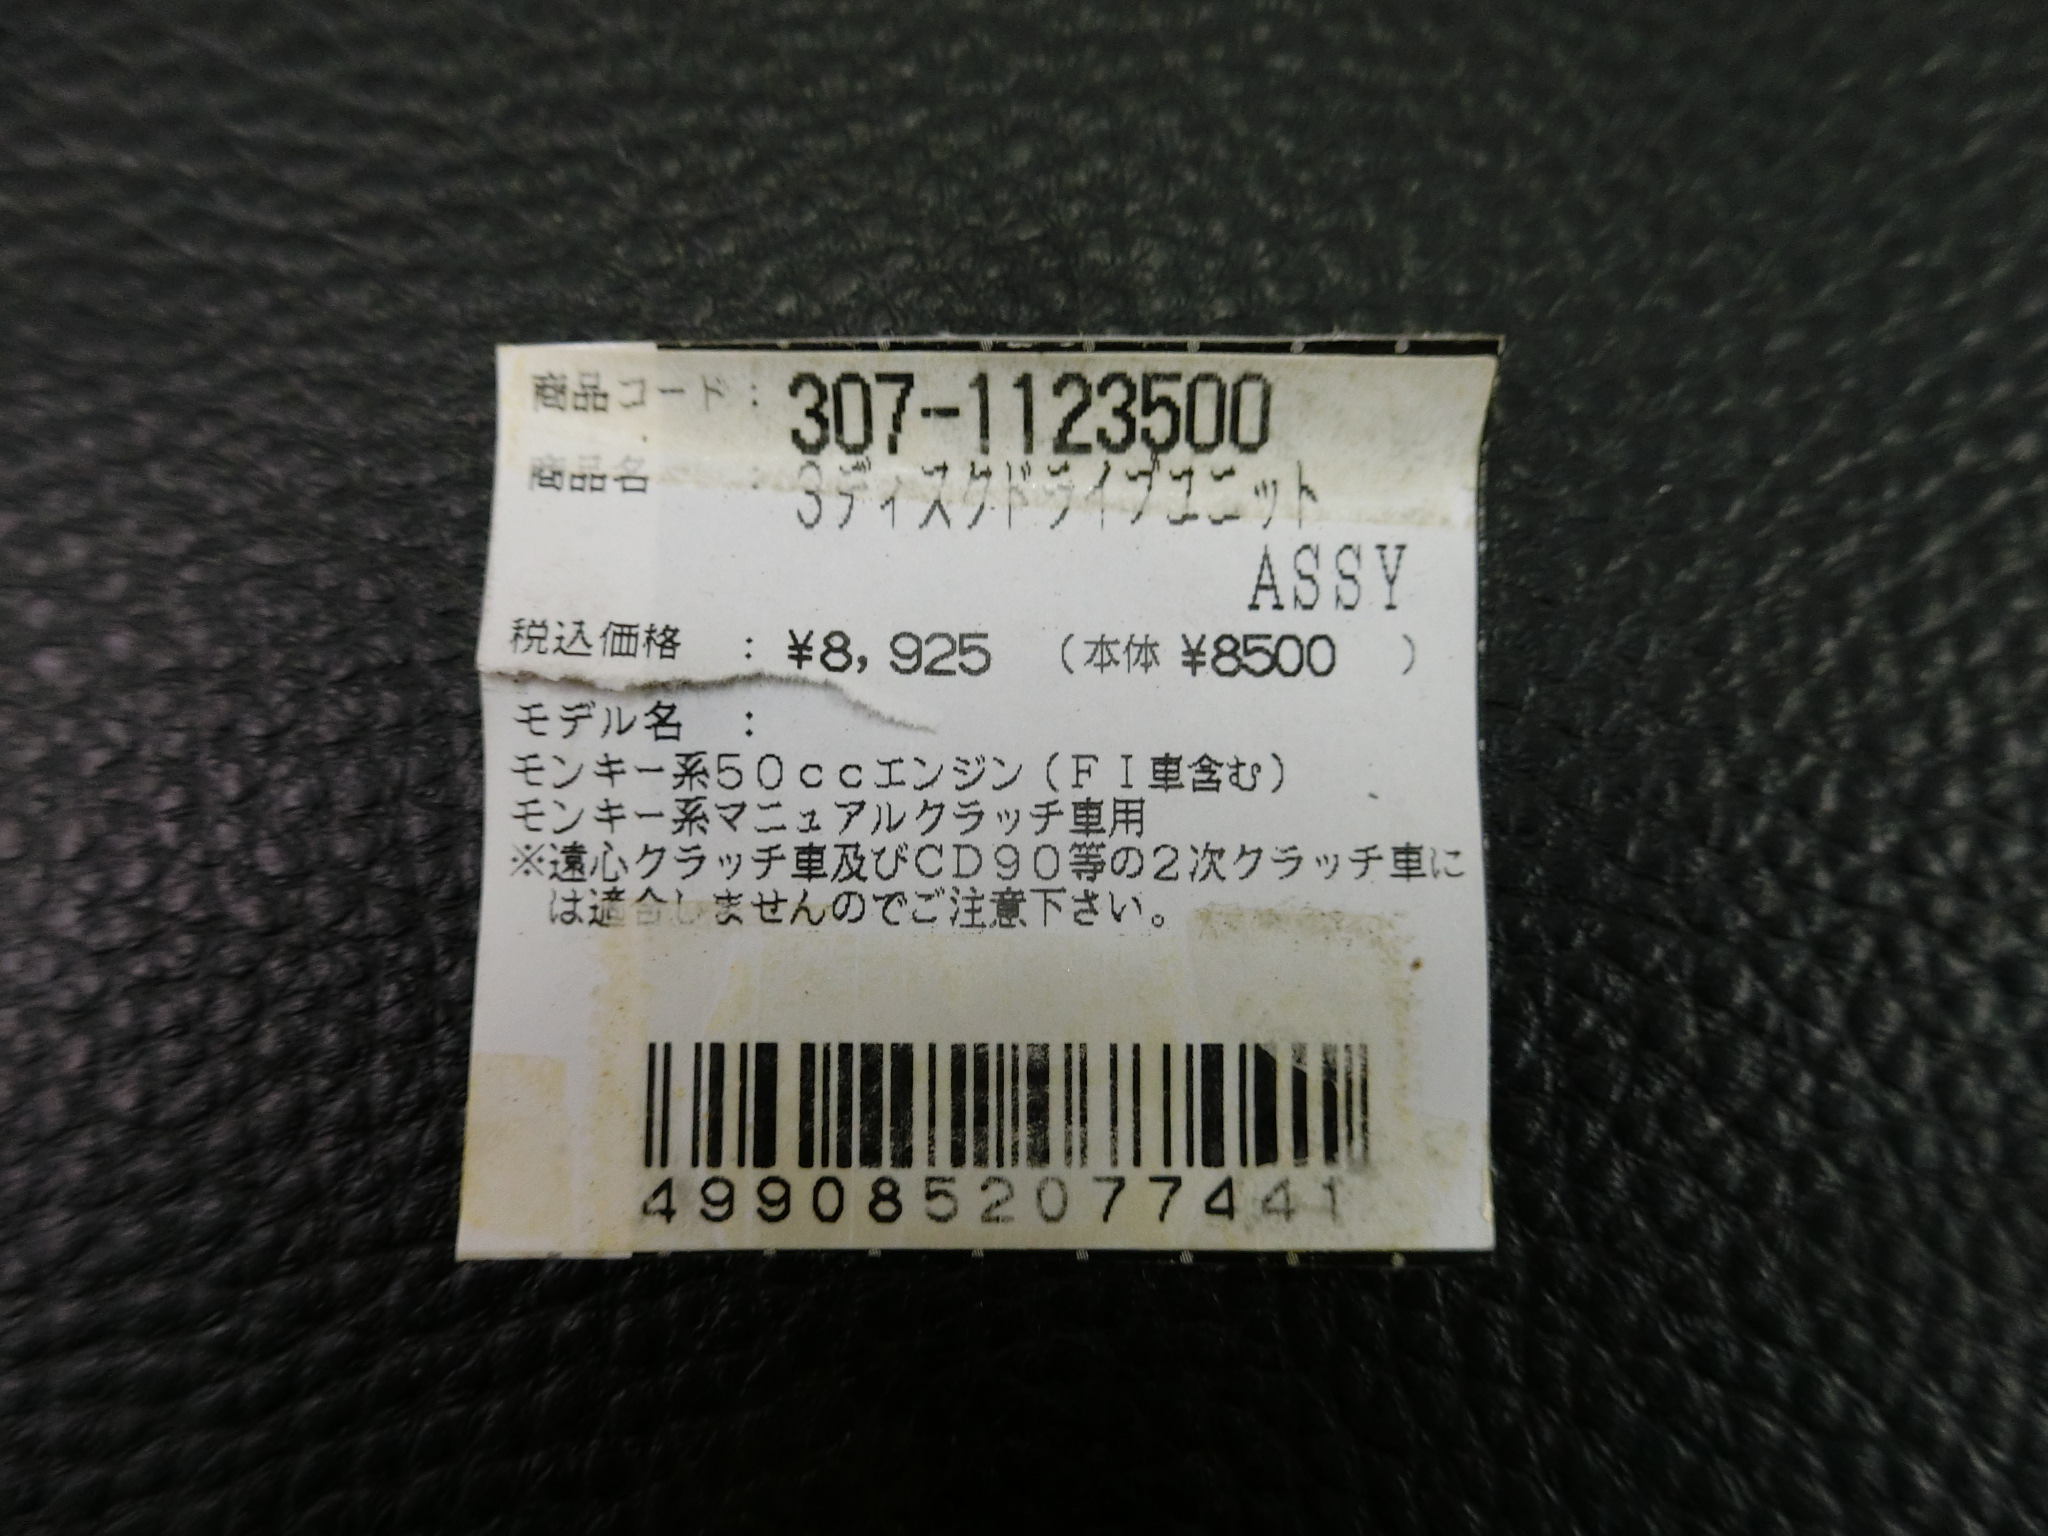  не использовался товар Kitaco KITACO Monkey серия 50cc двигатель Monkey серия manual сцепление автомобильный 3 дисковод единица 307-1123500 управление No.40005